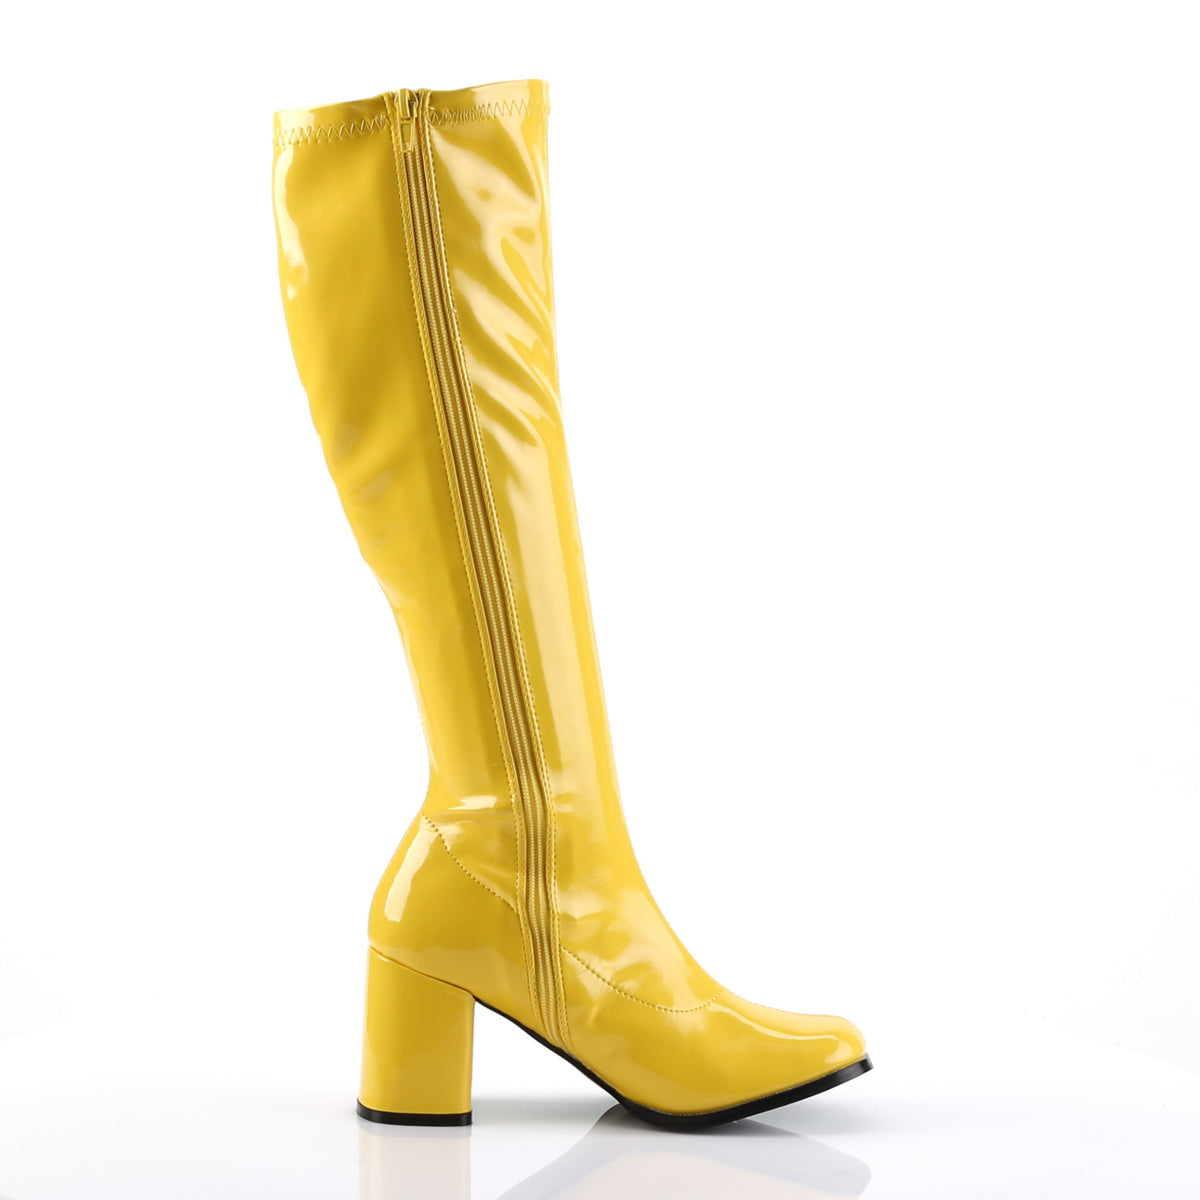 GOGO-300 3 Inch Heel Yellow Women's Boots Funtasma Costume Shoes Fancy Dress